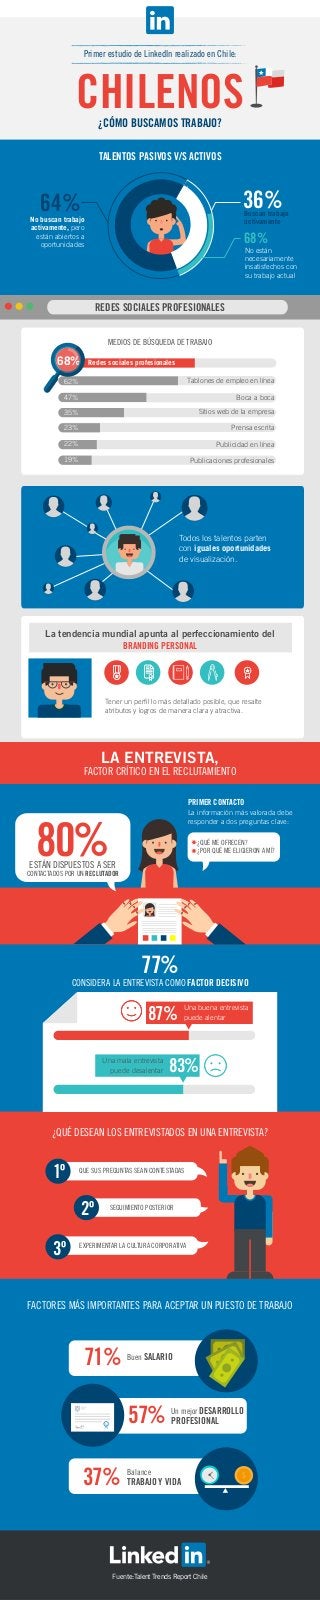 Primer estudio de LinkedIn realizado en Chile:
CHILENOS¿CÓMO BUSCAMOS TRABAJO?
La tendencia mundial apunta al perfeccionamiento del
BRANDING PERSONAL
TALENTOS PASIVOS V/S ACTIVOS
64%
80%
77%
1º
2º
3º
87%
36%
68%
Redes sociales profesionales68%68%
62%
47%
35%
23%
22%
19%
No buscan trabajo
activamente, pero
están abiertos a
oportunidades
No están
necesariamente
insatisfechos con
su trabajo actual
Tablones de empleo en línea
Boca a boca
Sitios web de la empresa
Prensa escrita
Publicidad en línea
Publicaciones profesionales
Tener un perfil lo más detallado posible, que resalte
atributos y logros de manera clara y atractiva.
LA ENTREVISTA,
FACTOR CRÍTICO EN EL RECLUTAMIENTO
FACTORES MÁS IMPORTANTES PARA ACEPTAR UN PUESTO DE TRABAJO
¿QUÉ DESEAN LOS ENTREVISTADOS EN UNA ENTREVISTA?
ESTÁN DISPUESTOS A SER
CONTACTADOS POR UN RECLUTADOR
CONSIDERA LA ENTREVISTA COMO FACTOR DECISIVO
Una buena entrevista
puede alentar
QUE SUS PREGUNTAS SEAN CONTESTADAS
SEGUIMIENTO POSTERIOR
EXPERIMENTAR LA CULTURA CORPORATIVA
71% Buen SALARIO
57% Un mejor DESARROLLO
PROFESIONAL
37% Balance
TRABAJO Y VIDA
Una mala entrevista
puede desalentar
¿QUÉ ME OFRECEN?
¿POR QUÉ ME ELIGIERON A MÍ?
MEDIOS DE BÚSQUEDA DE TRABAJO
REDES SOCIALES PROFESIONALES
Todos los talentos parten
con iguales oportunidades
de visualización.
PRIMER CONTACTO
La información más valorada debe
responder a dos preguntas clave:
83%
Fuente:Talent Trends Report Chile
Buscan trabajo
activamente
 